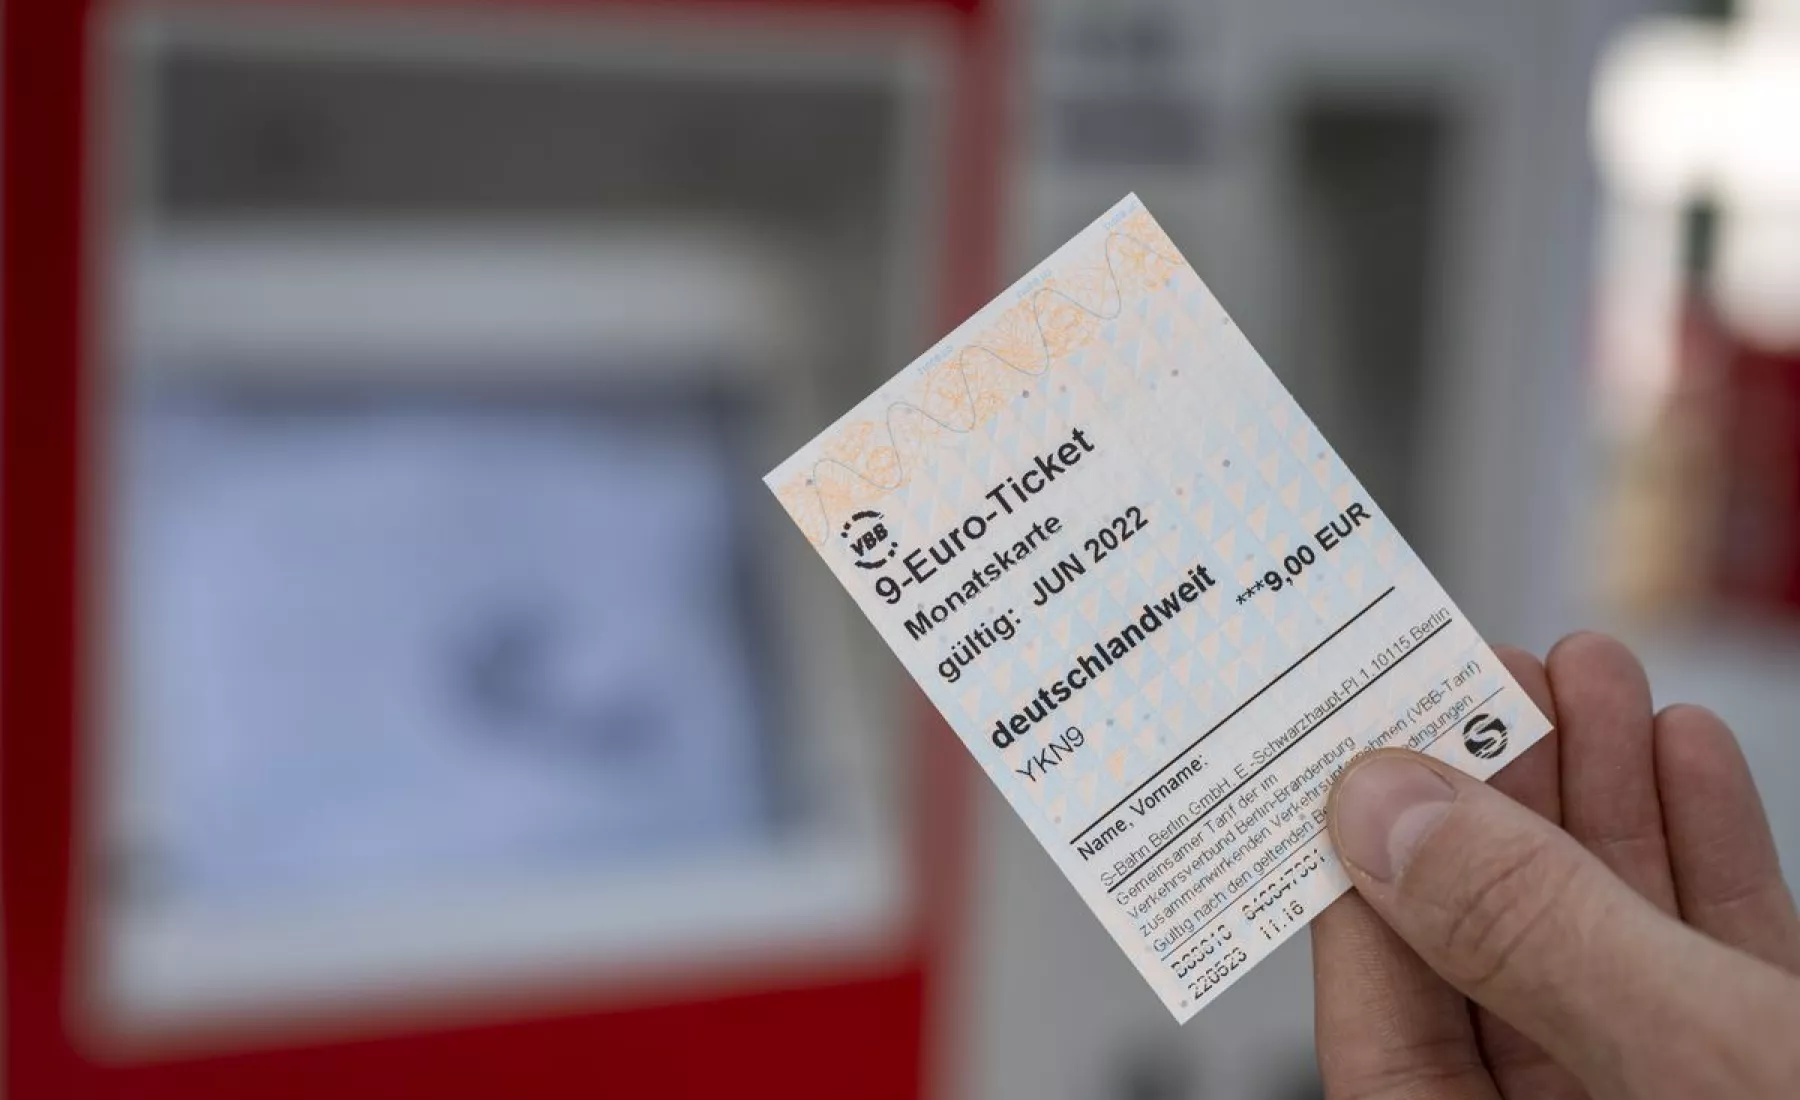 Ein 9-Euro-Ticket wird vor einen Fahrkartenautomat gehalten